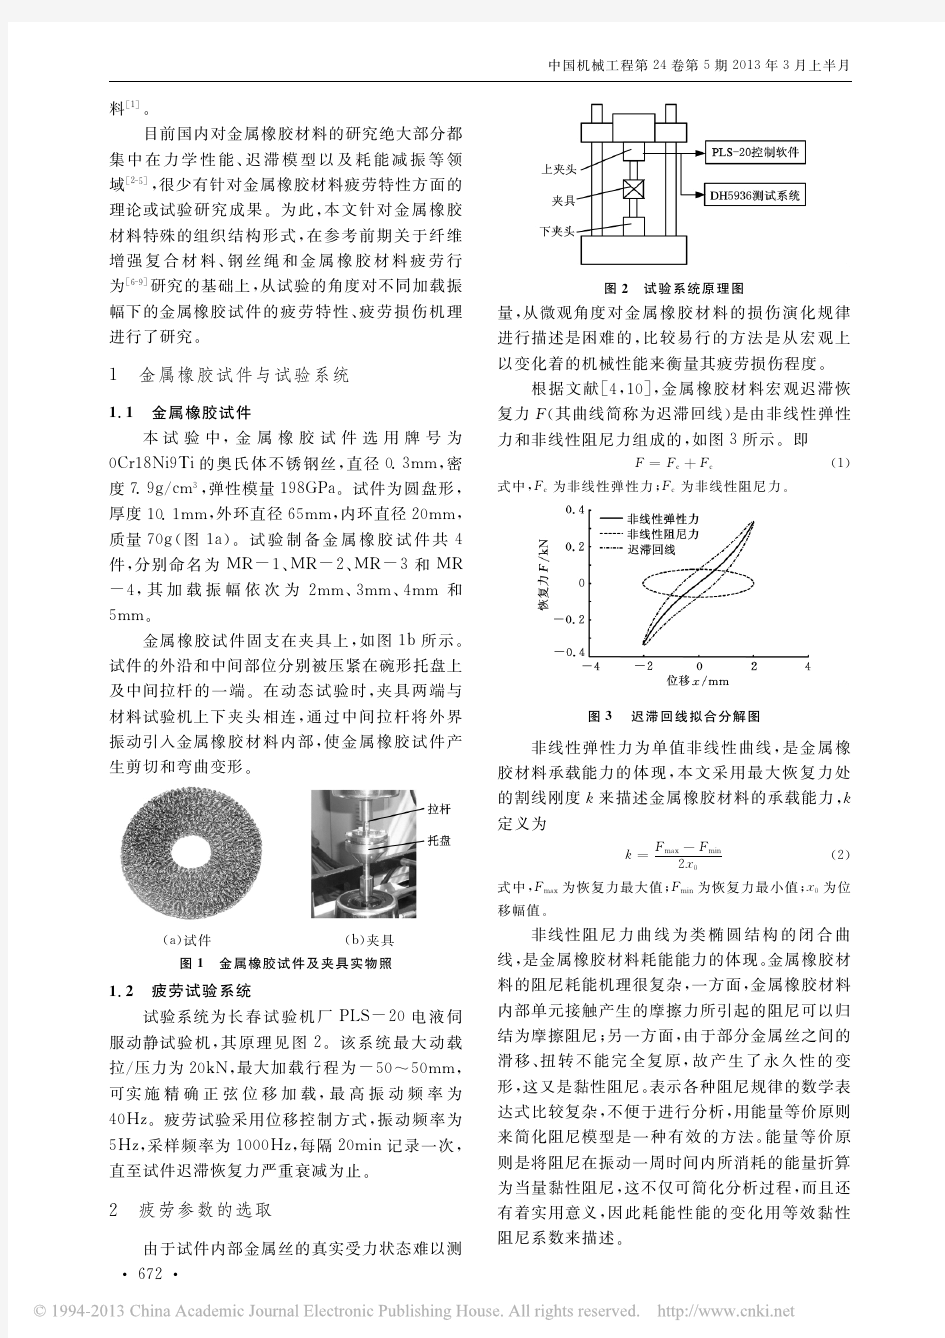 振幅对金属橡胶材料疲劳寿命的影响分析_曹凤利